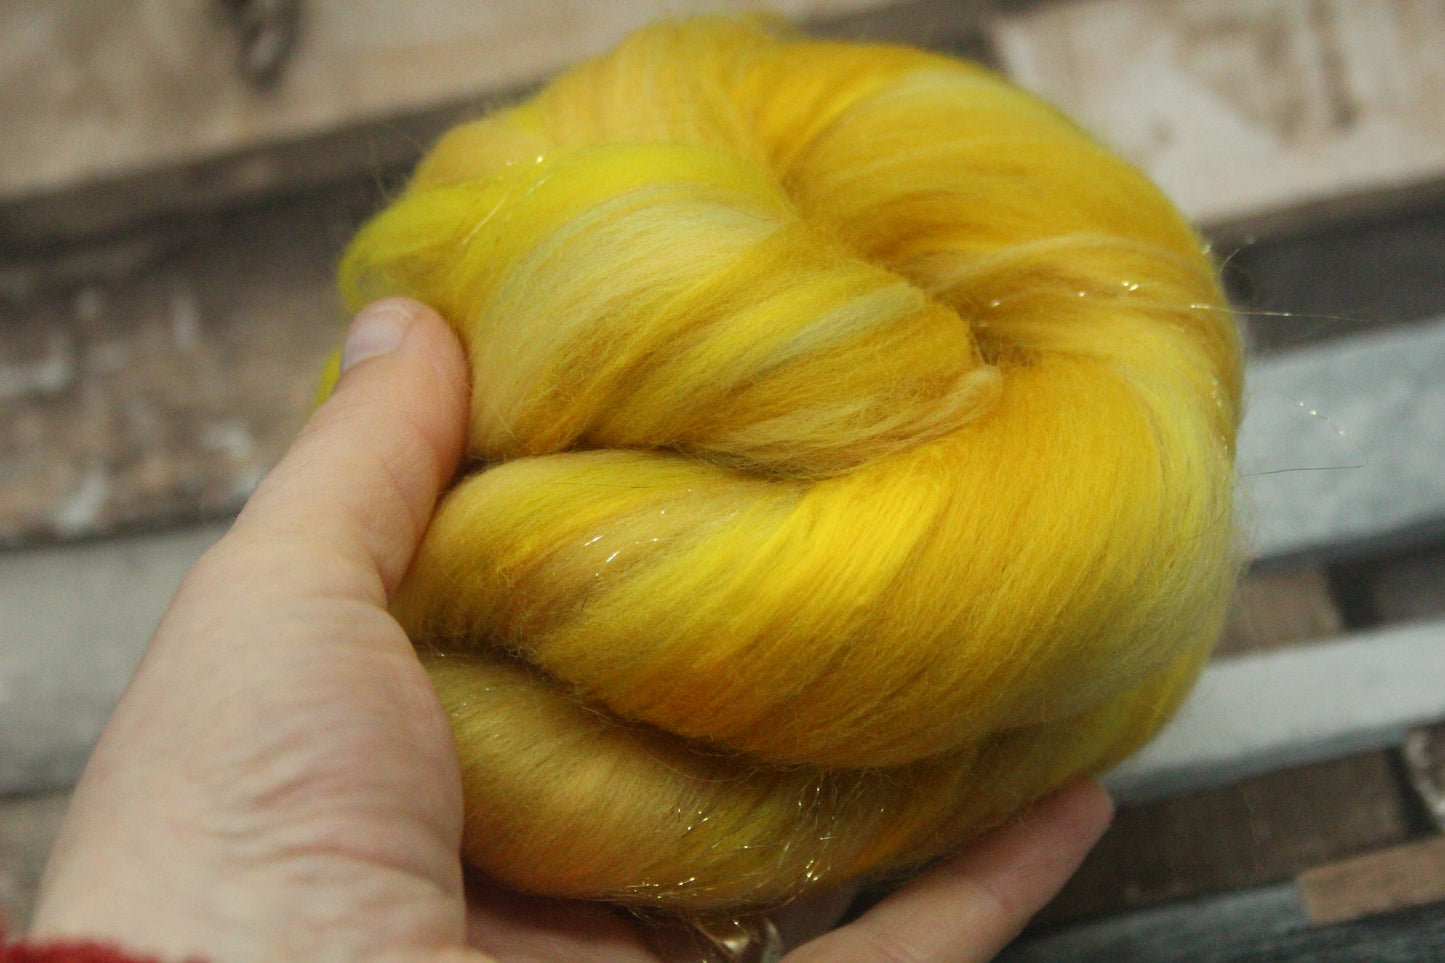 Merino Wool Blend - Yellow - 21 grams / 0.7 oz  - Fibre for felting, weaving or spinning